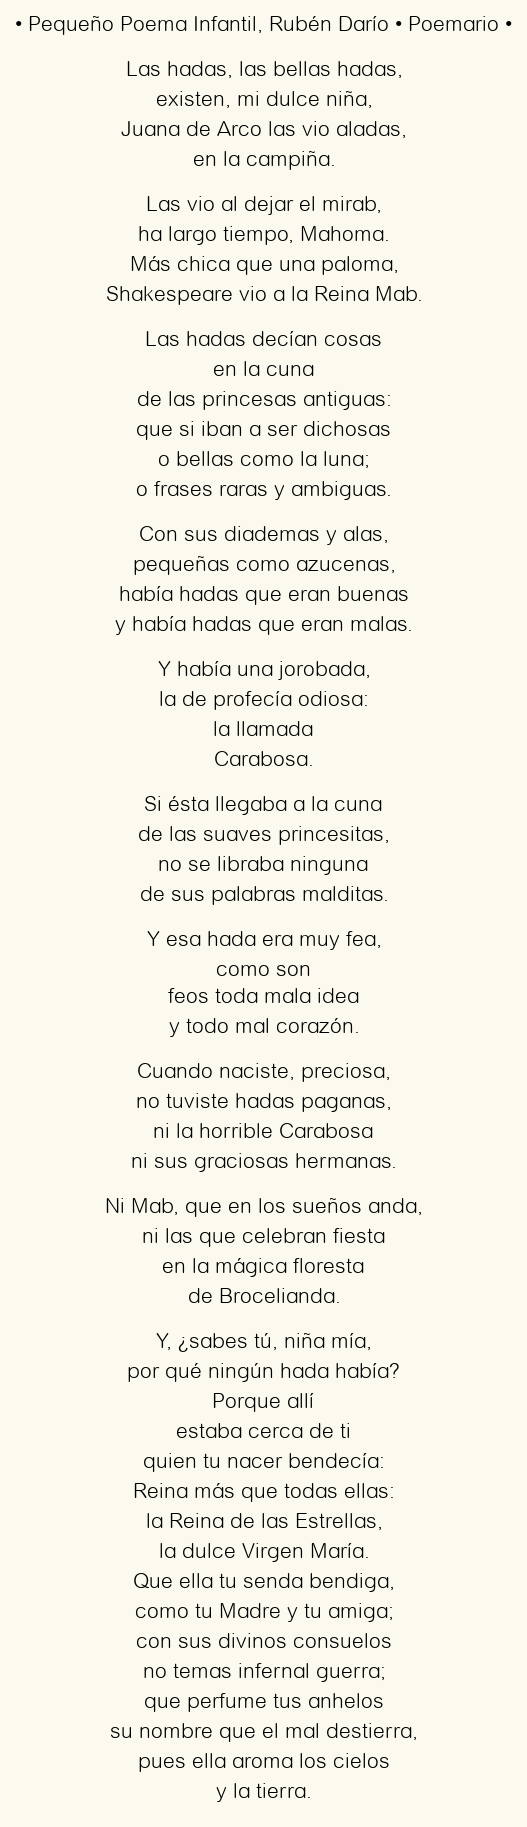 Imagen con el poema Pequeño Poema Infantil, por Rubén Darío